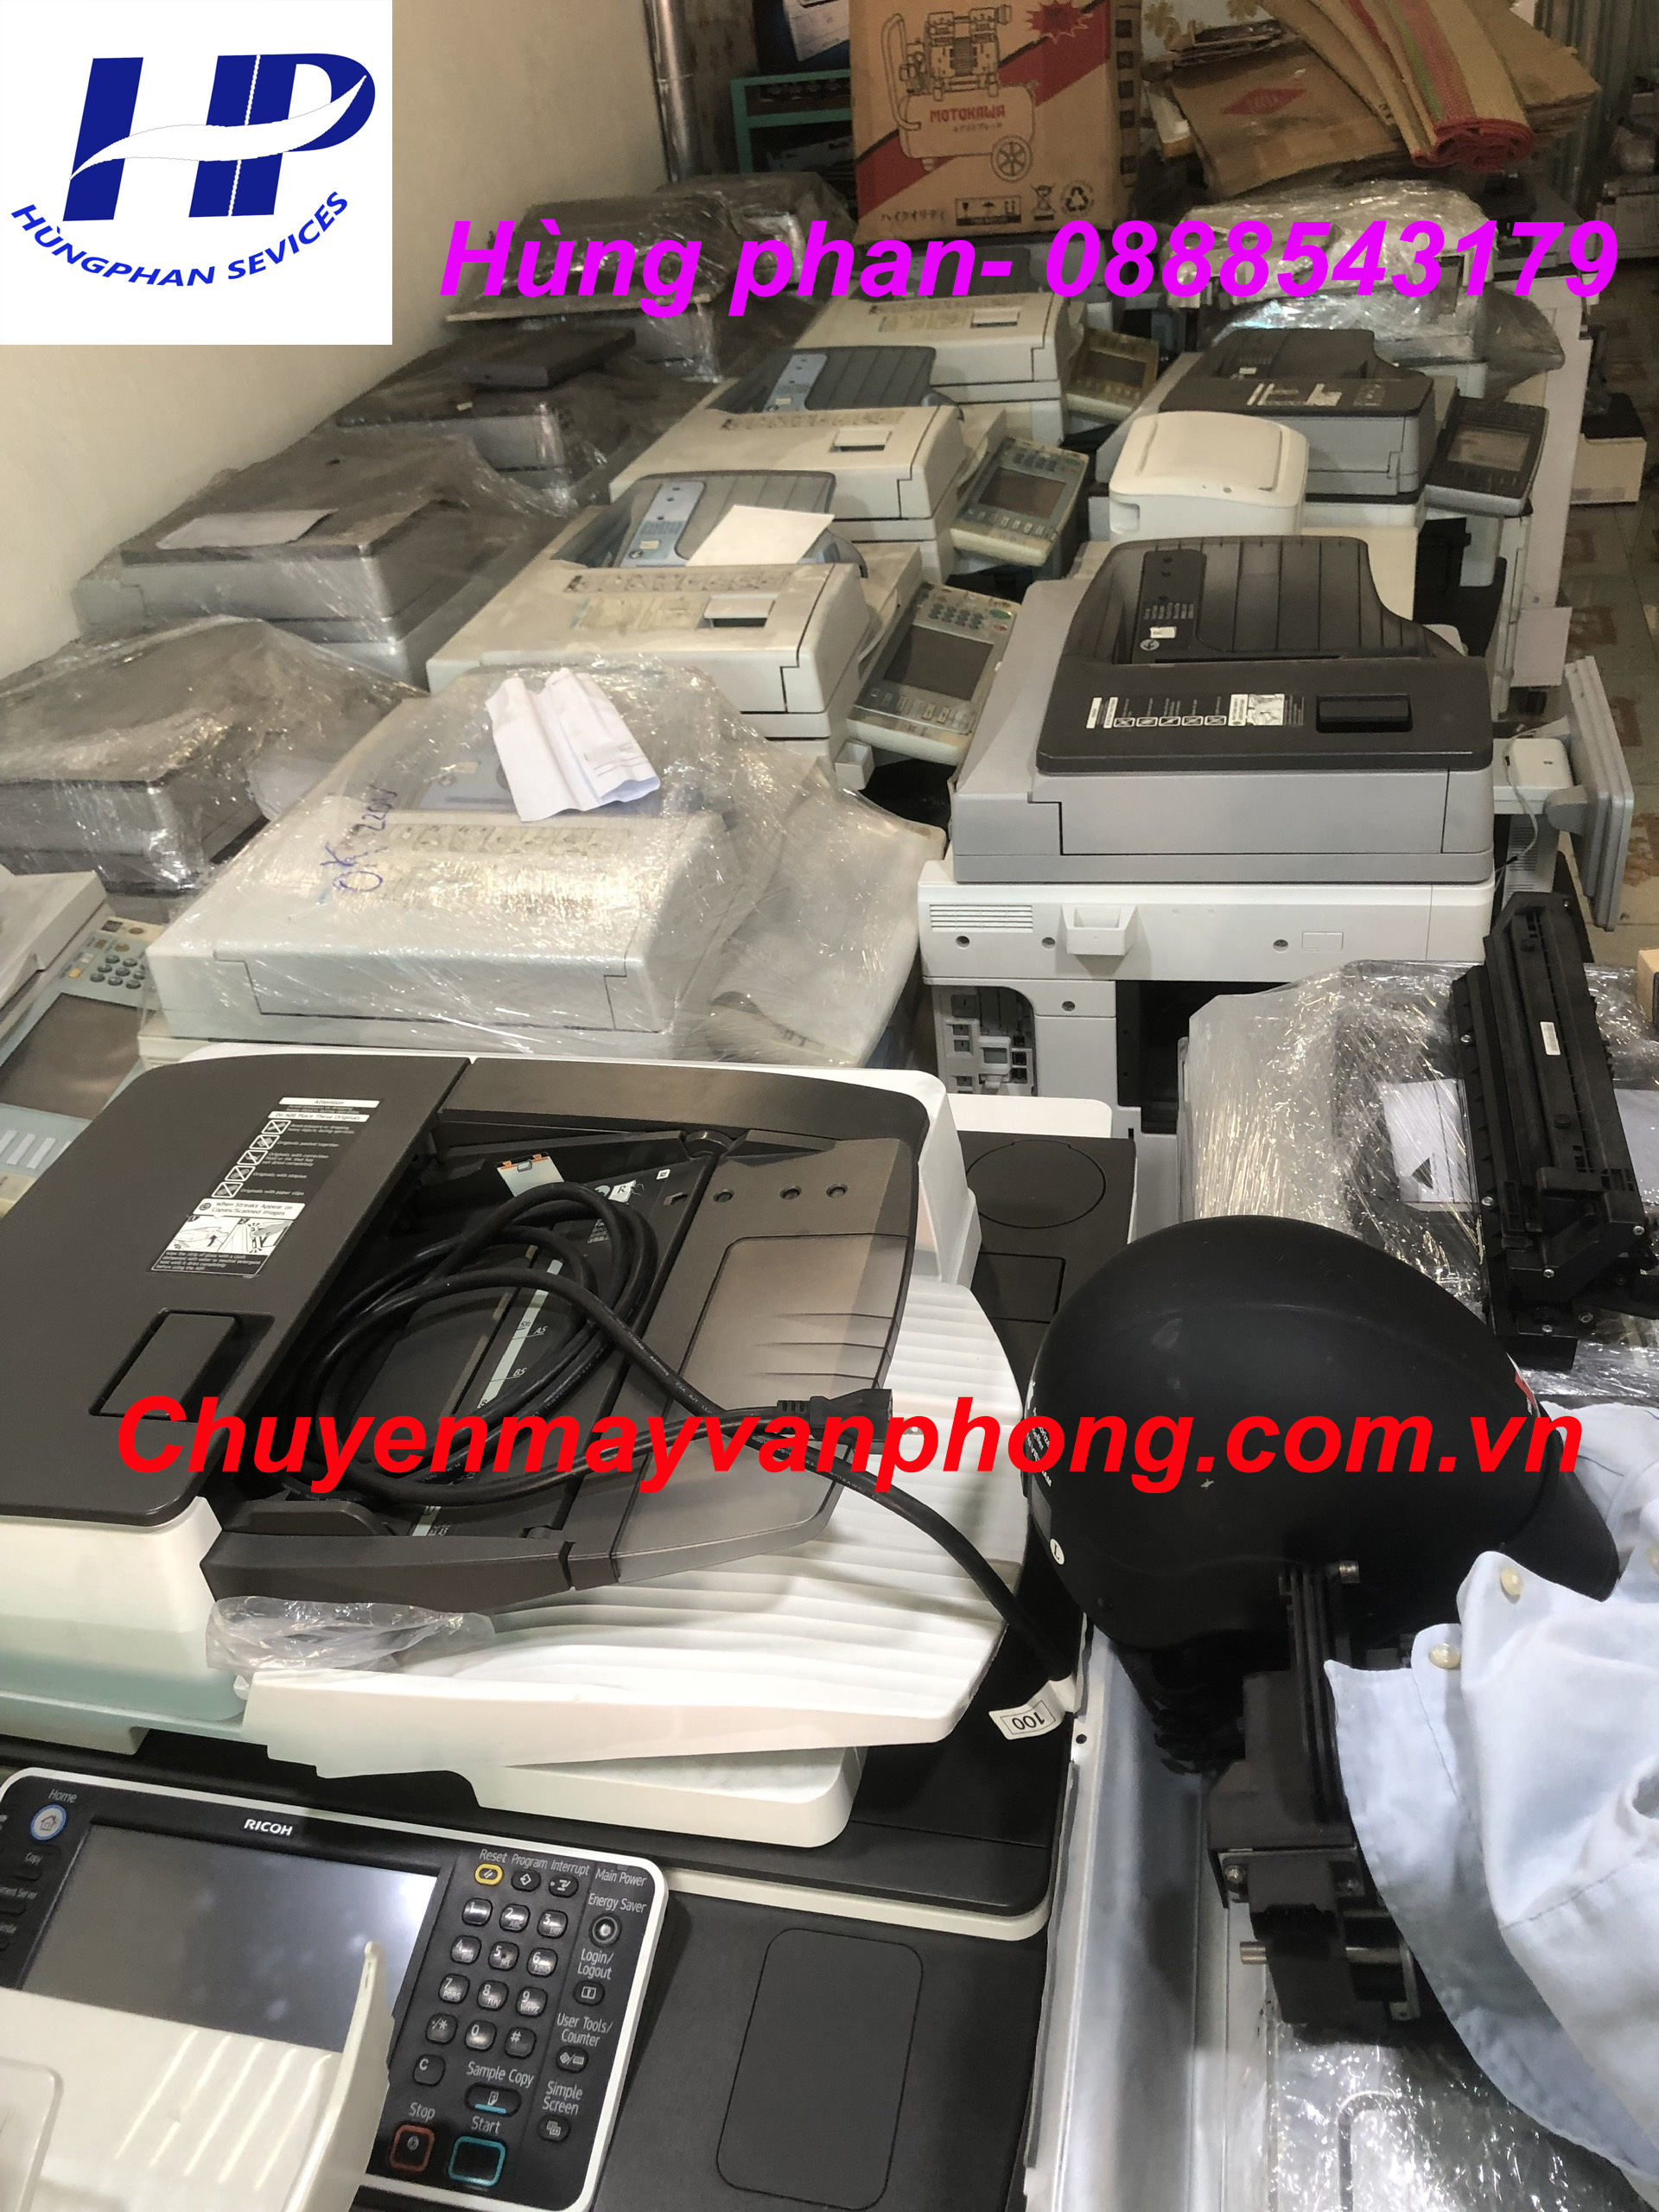 Thanh lí máy photocopy Quận Bình Tân